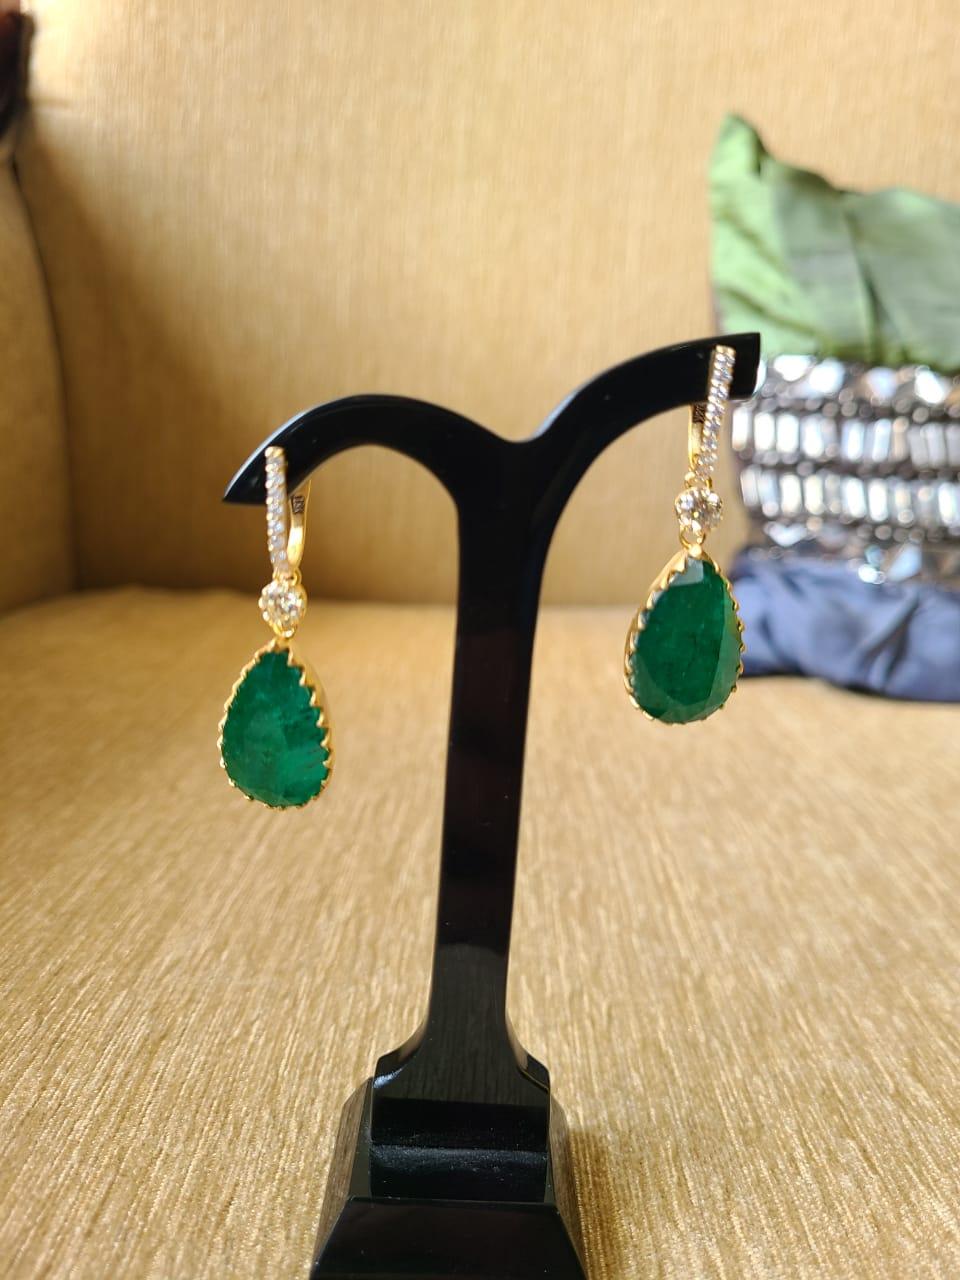 Classical Greek 27.04 Carats, Zambian Emerald & Diamonds Chandelier/ Dangle Classic Earrings